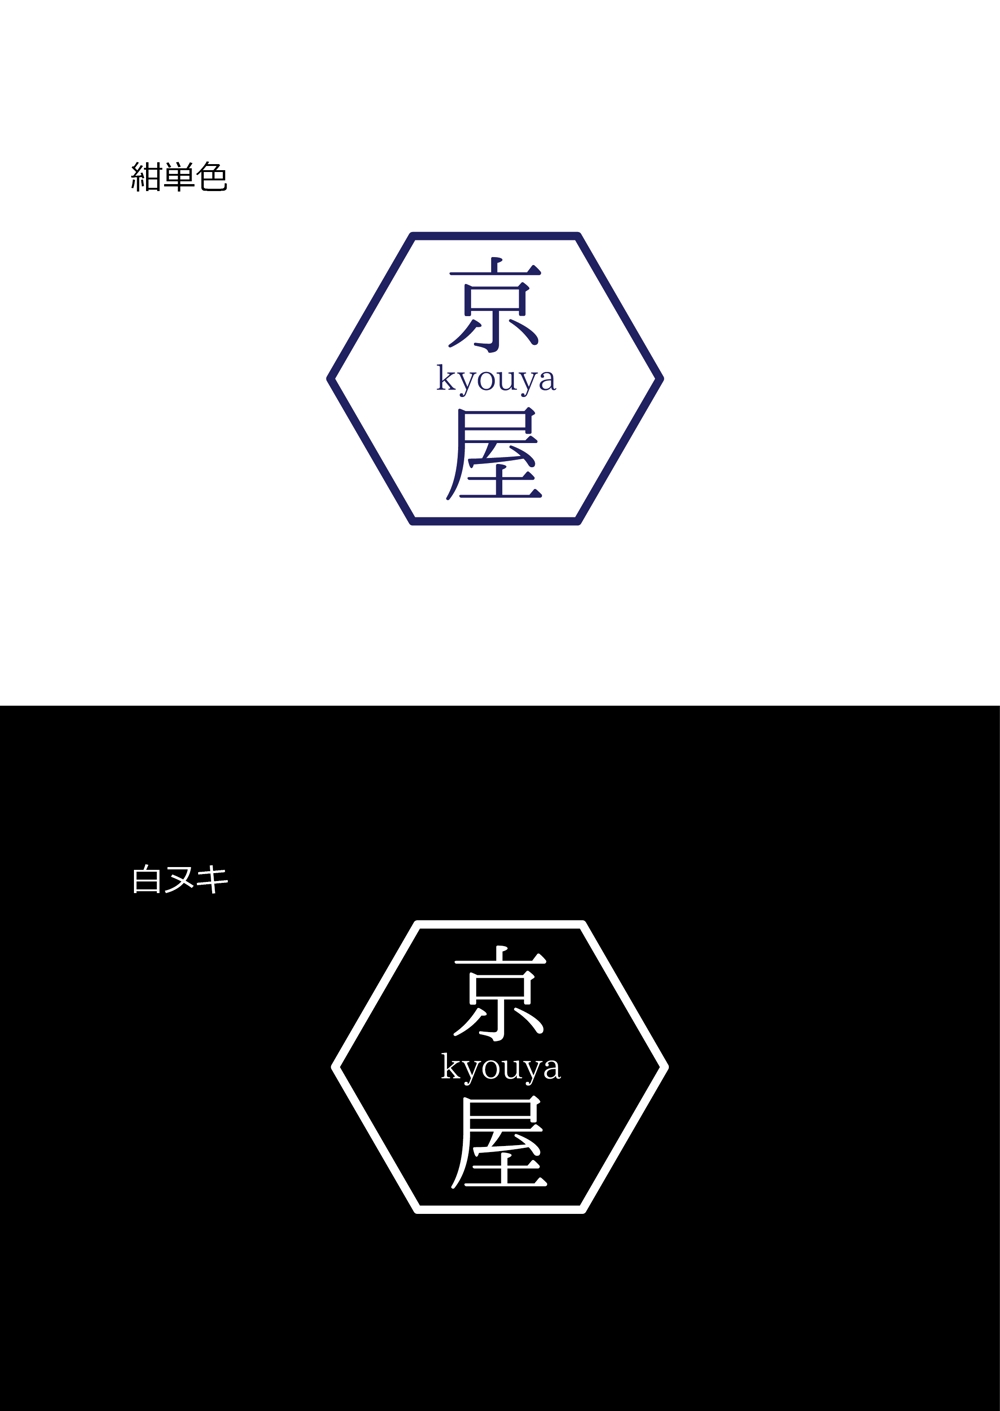 kyouya_logo2.jpg